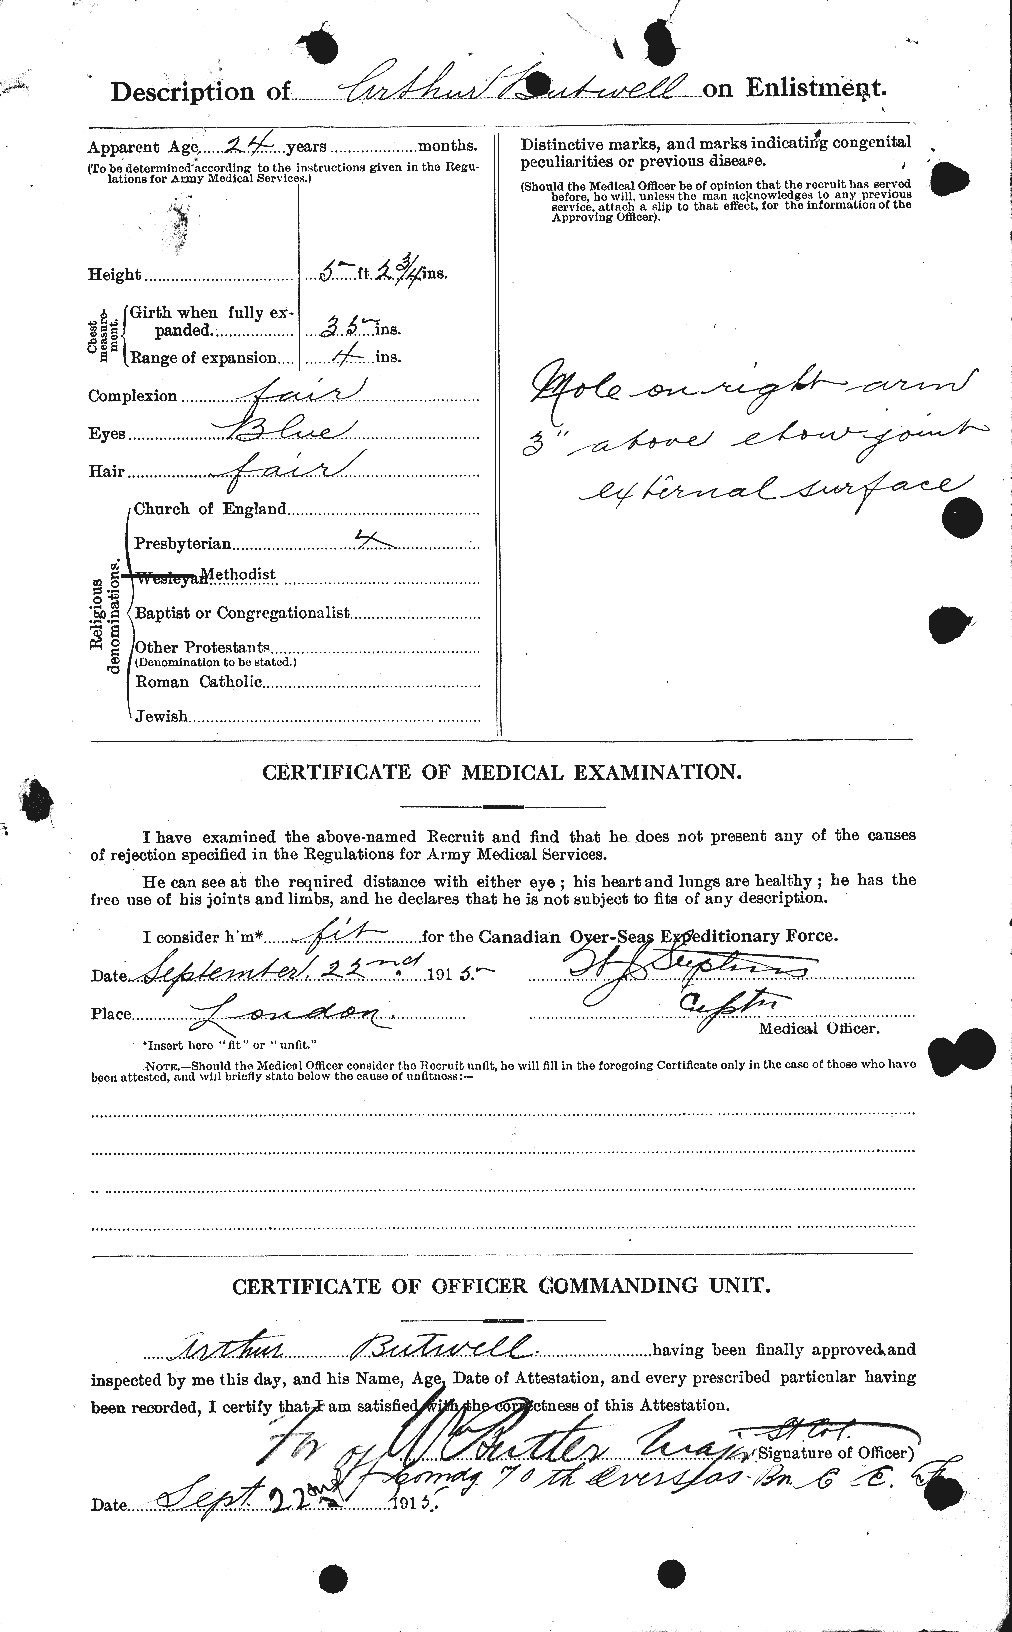 Dossiers du Personnel de la Première Guerre mondiale - CEC 275554b